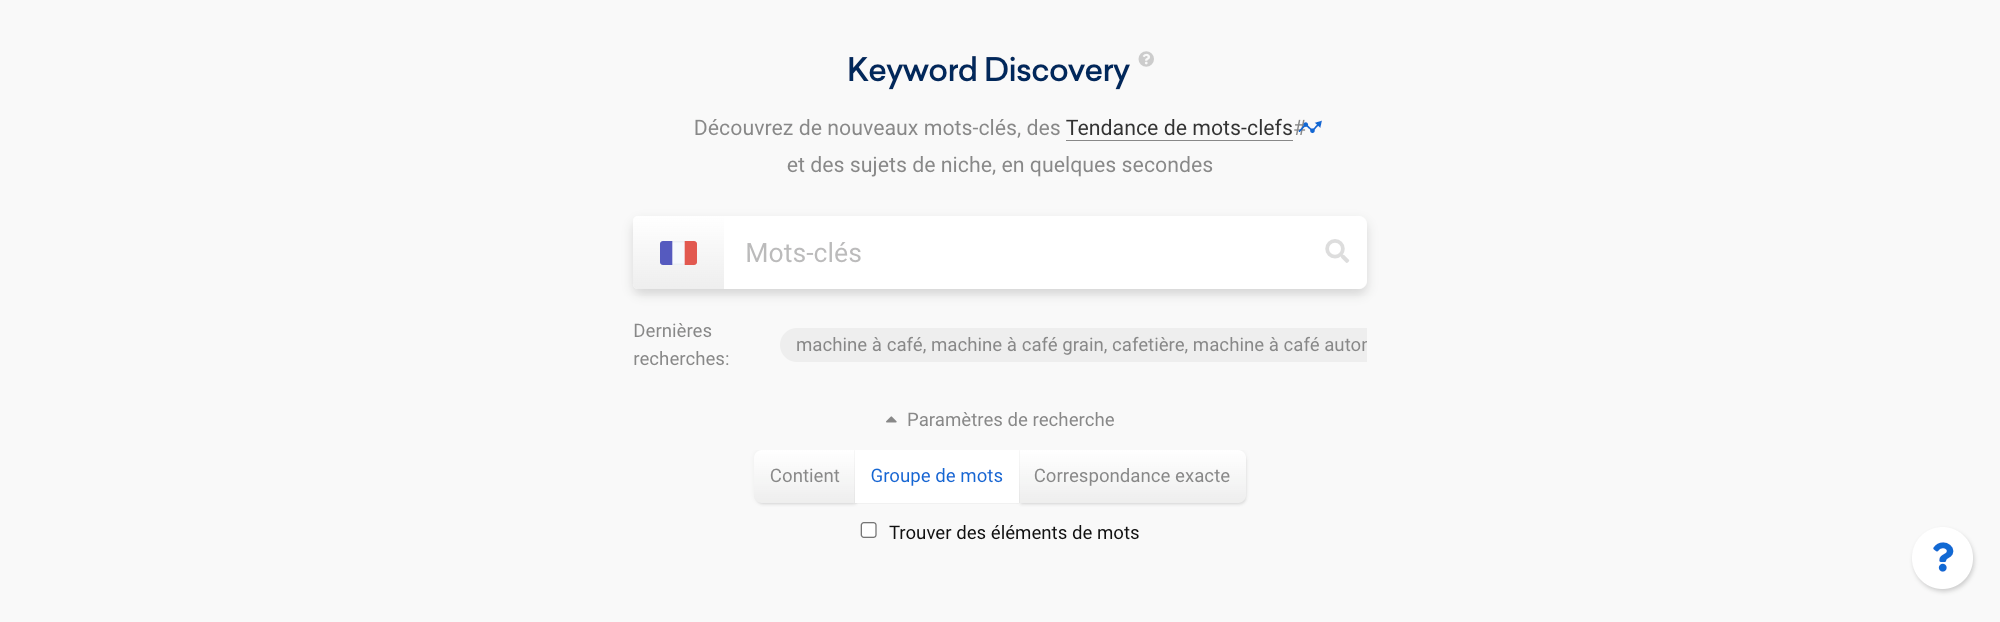 Focus sur la fonctionnalité Keyword Discovery et sur les paramètres de recherche disponibles